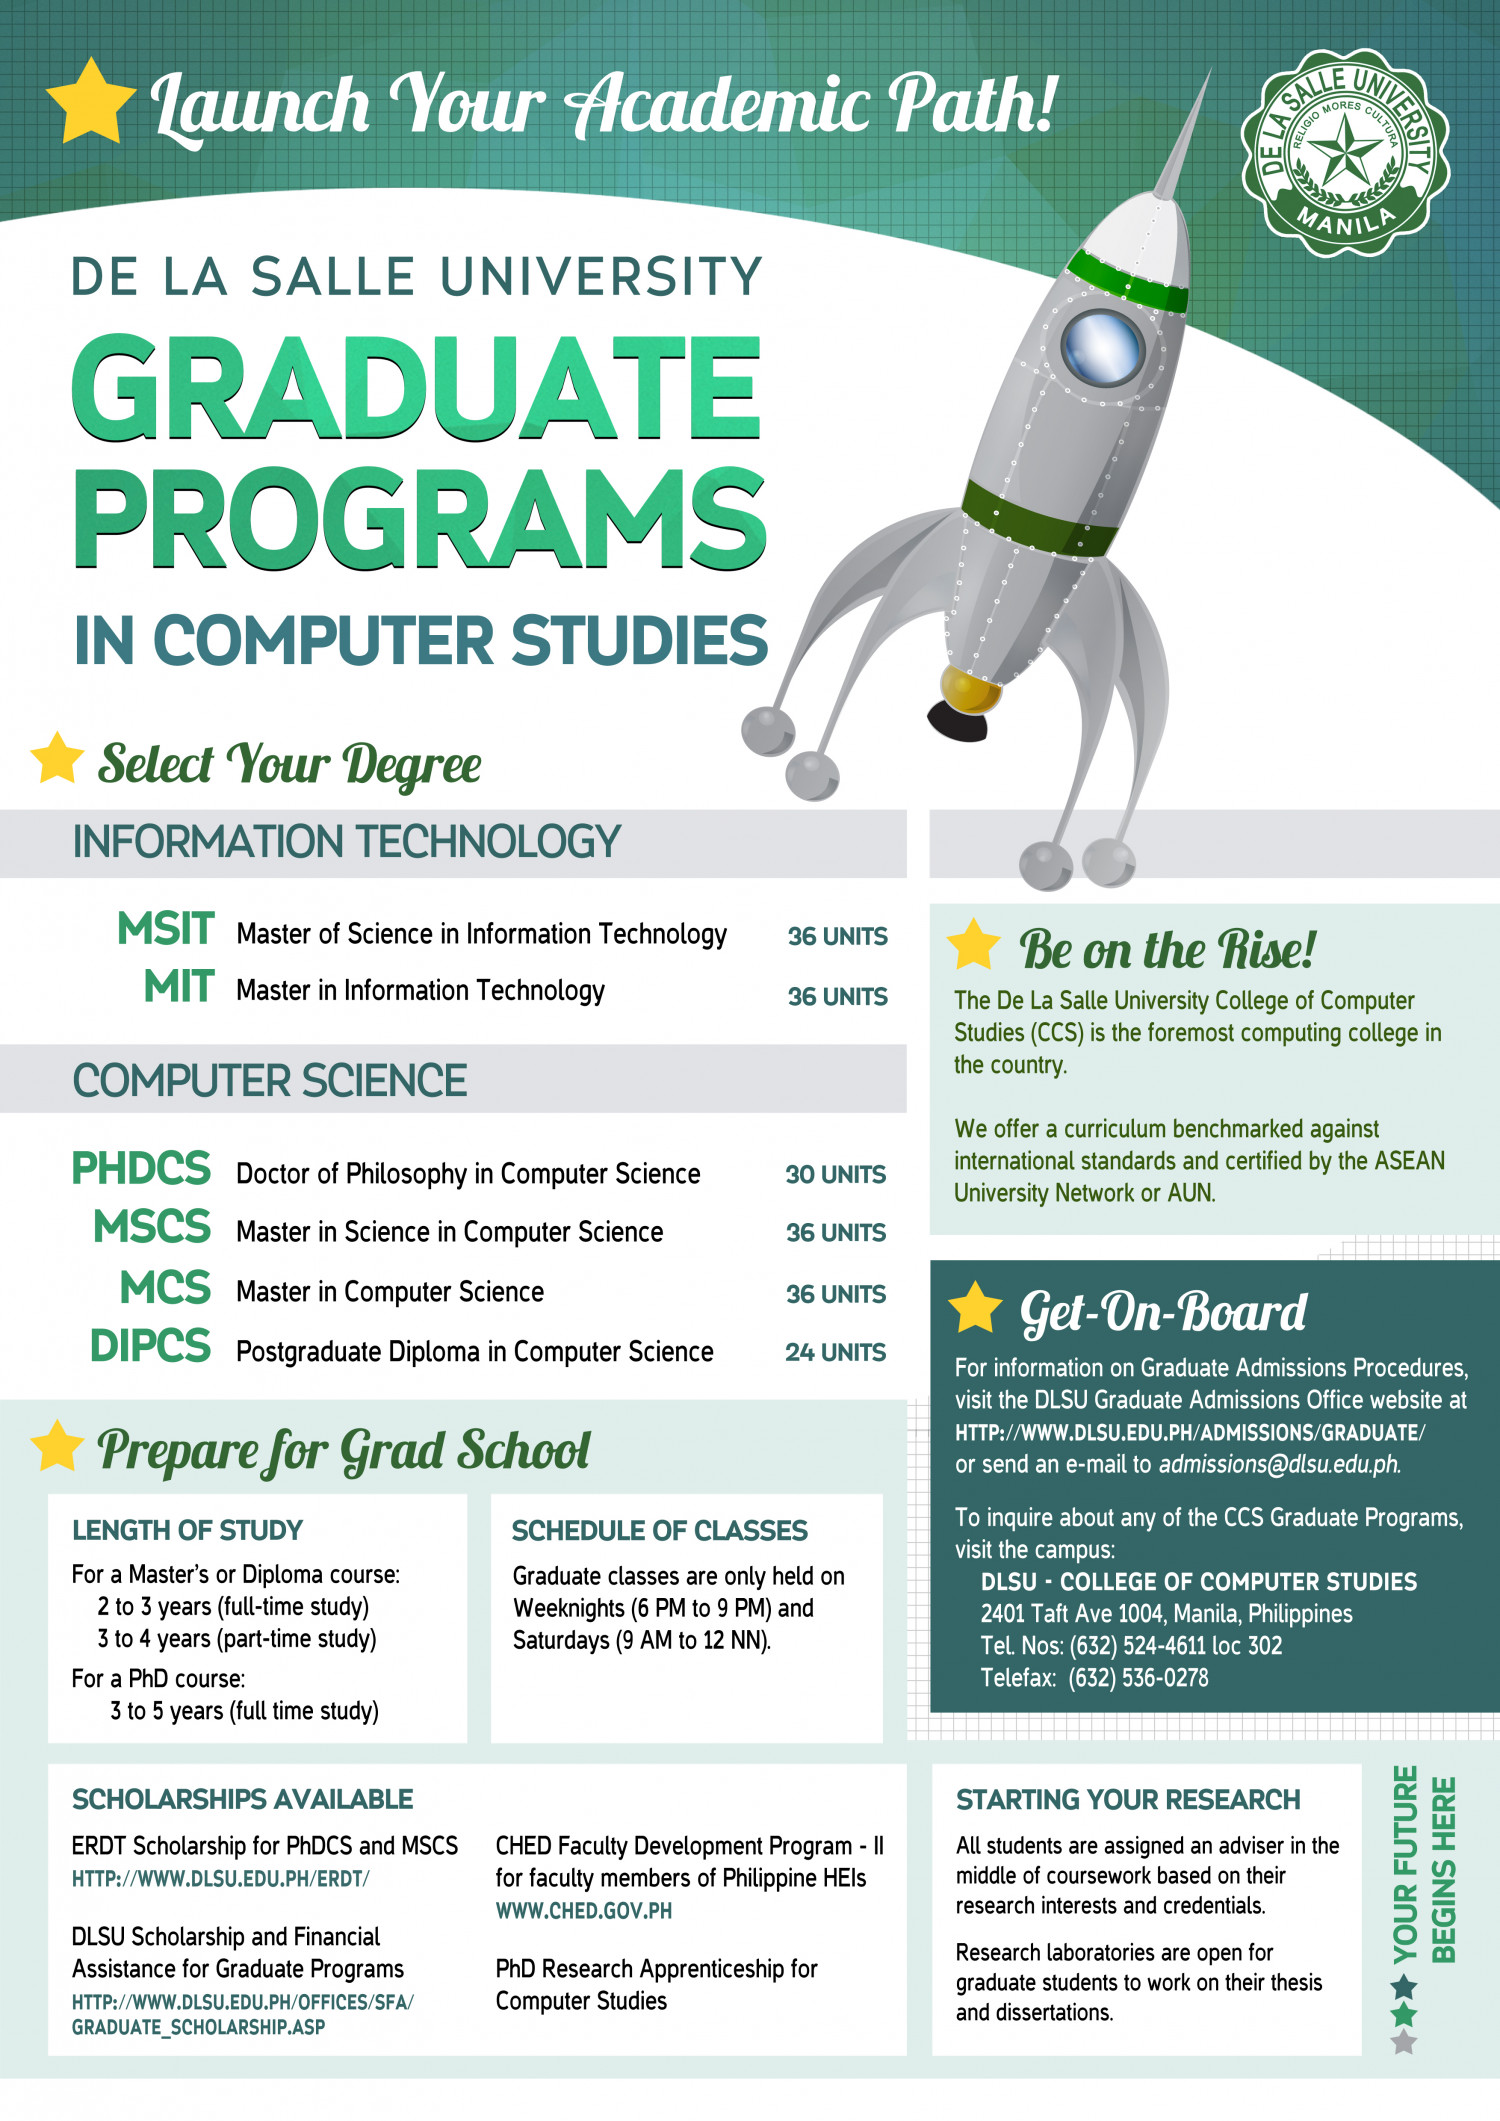 DLSU College of Computer Studies Graduate School Programs Infographic